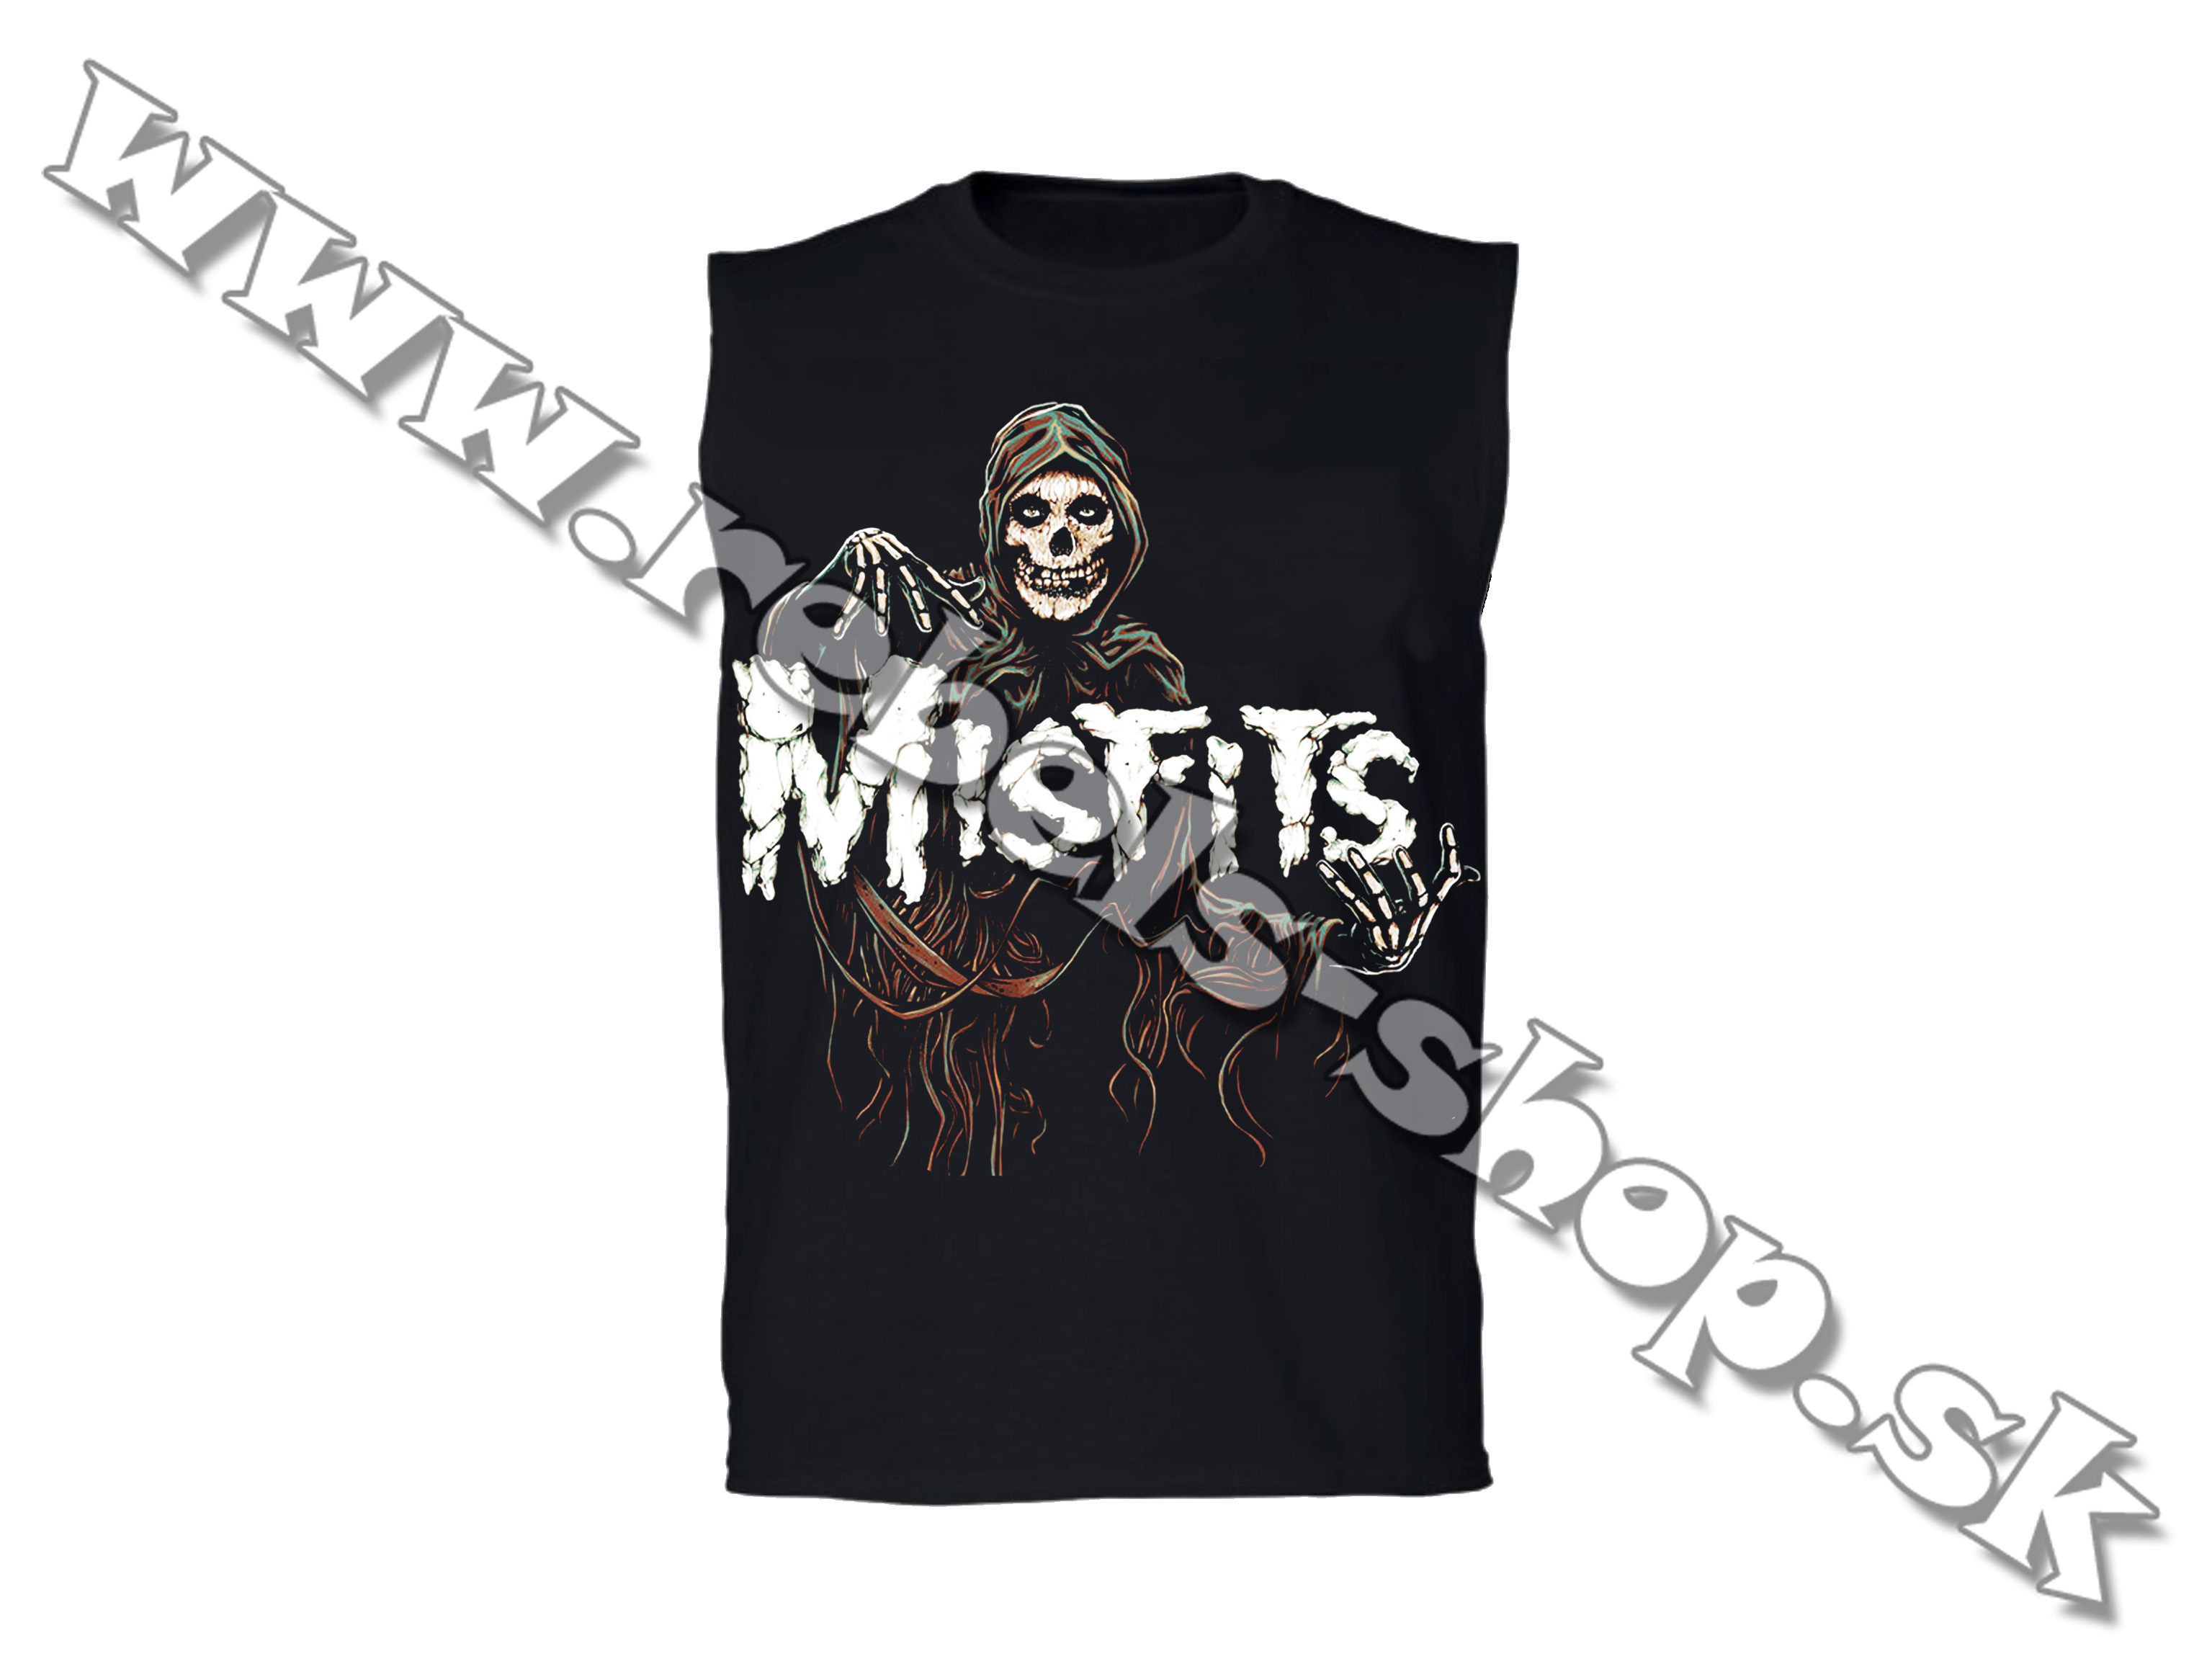 Tričko "Misfits"